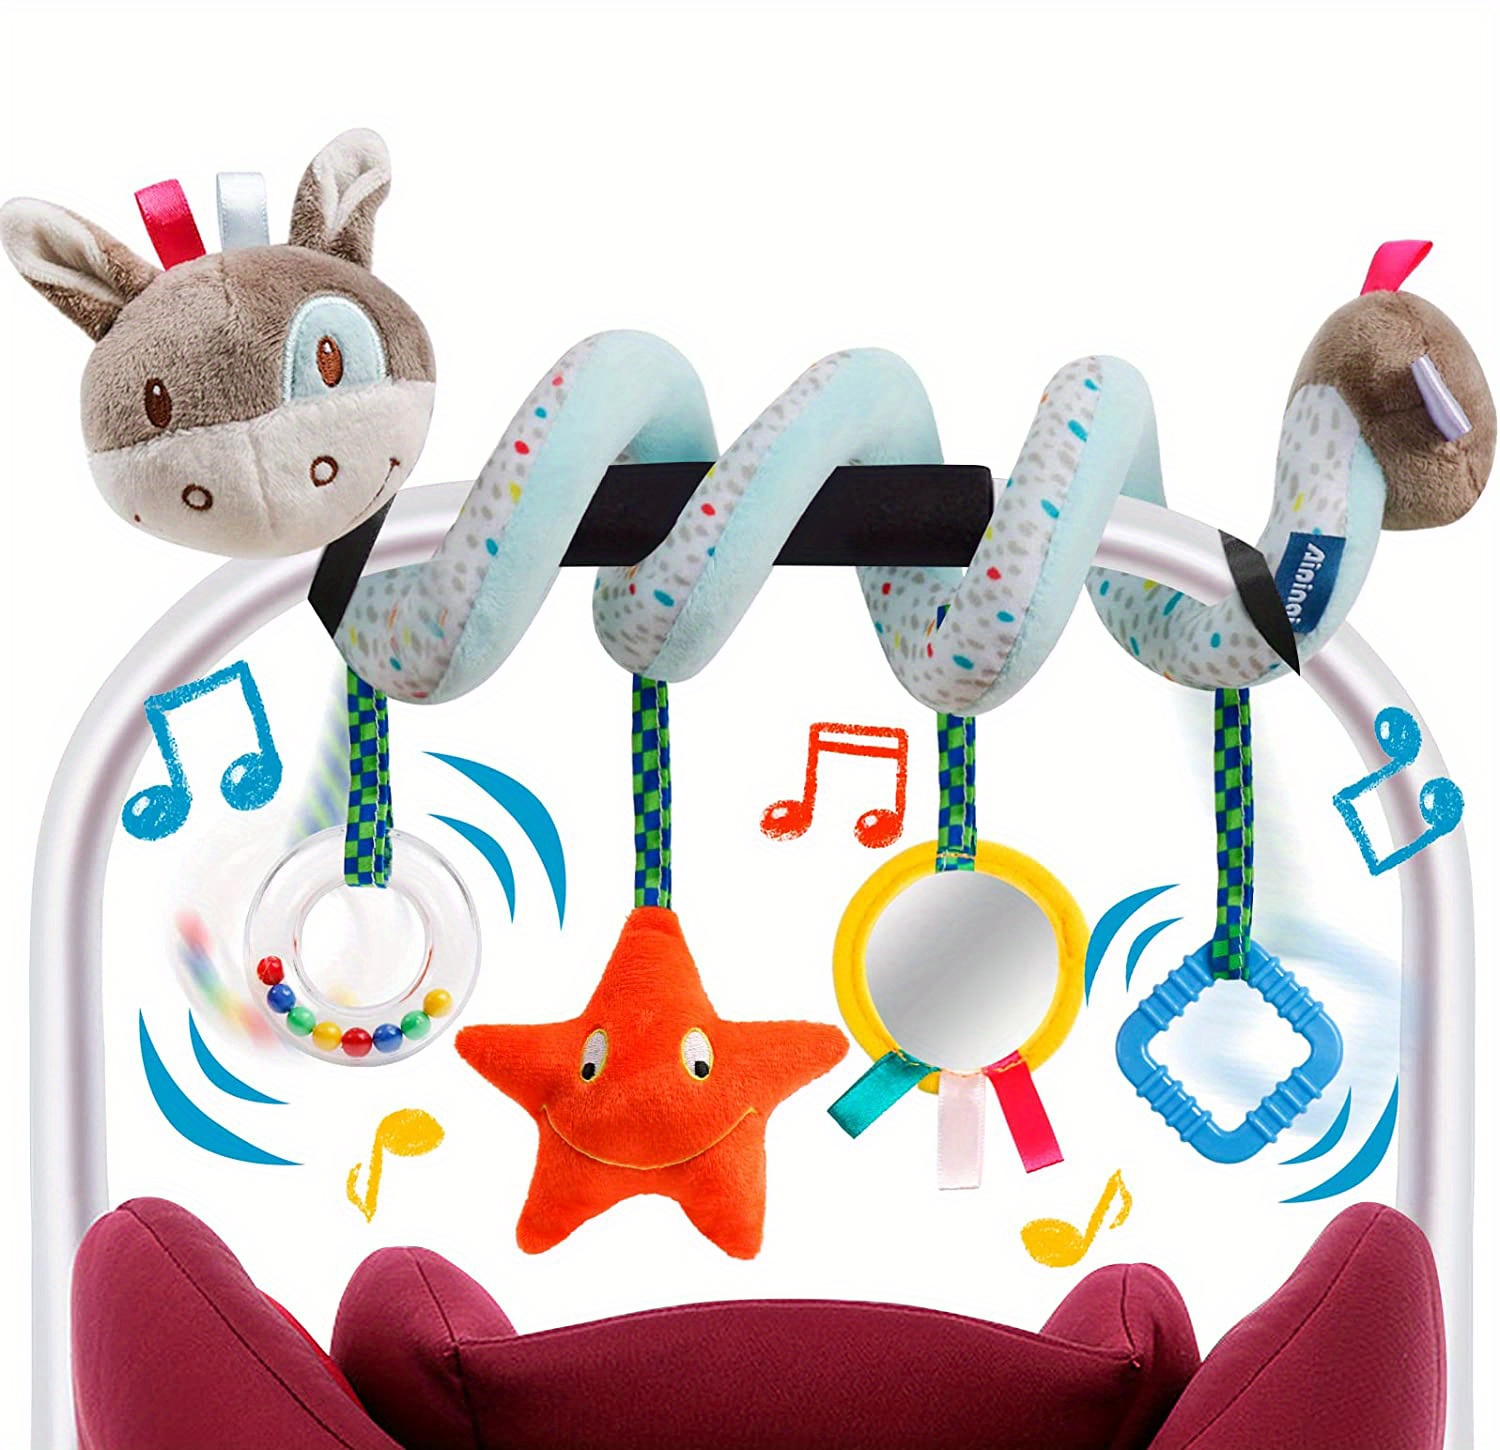 XYBHRC Juguetes de asiento de coche en espiral para asiento de coche y  cochecito, juguetes colgantes para asiento de automóvil, cuna, móvil, bebé,  juguetes de felpa en espiral para cuna, cama, cochecito, asiento de coche,  barra  